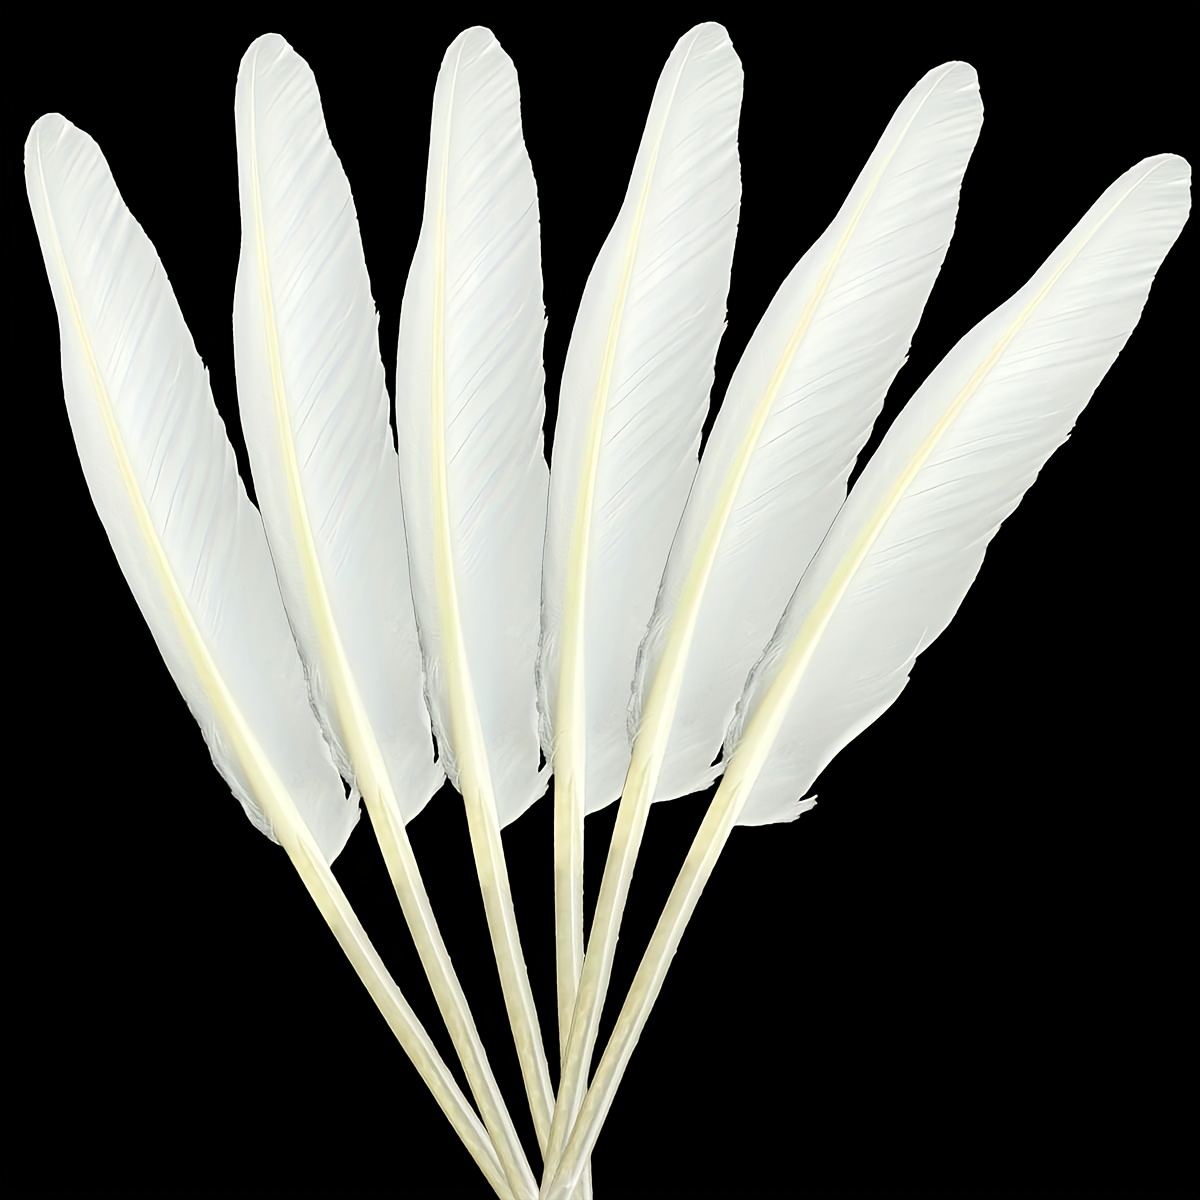 500 Uds. De plumas blancas de 3 a 5 pulgadas para manualidades de  bricolaje, decoraciones para bodas, fiestas en casa